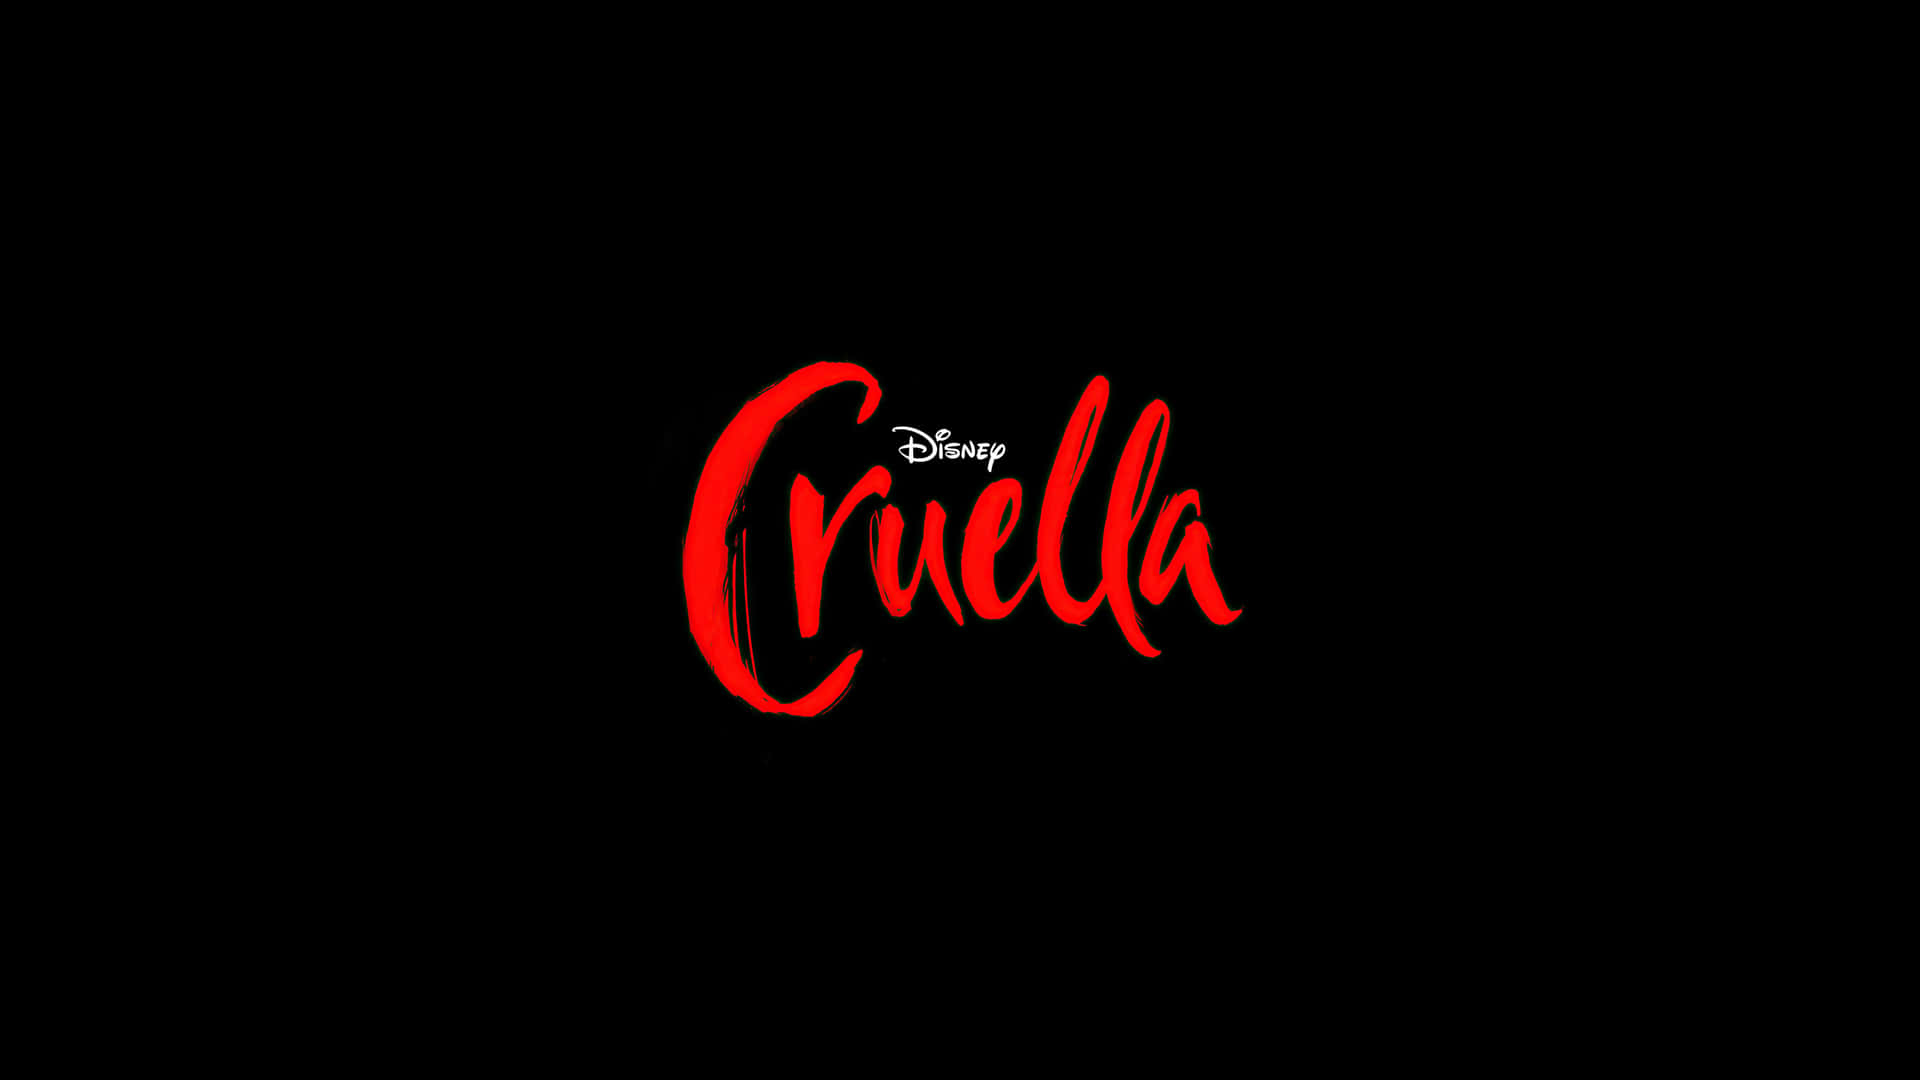 Upplevden Skojiga Busigheten Med Emma Stone I Disney's Cruella